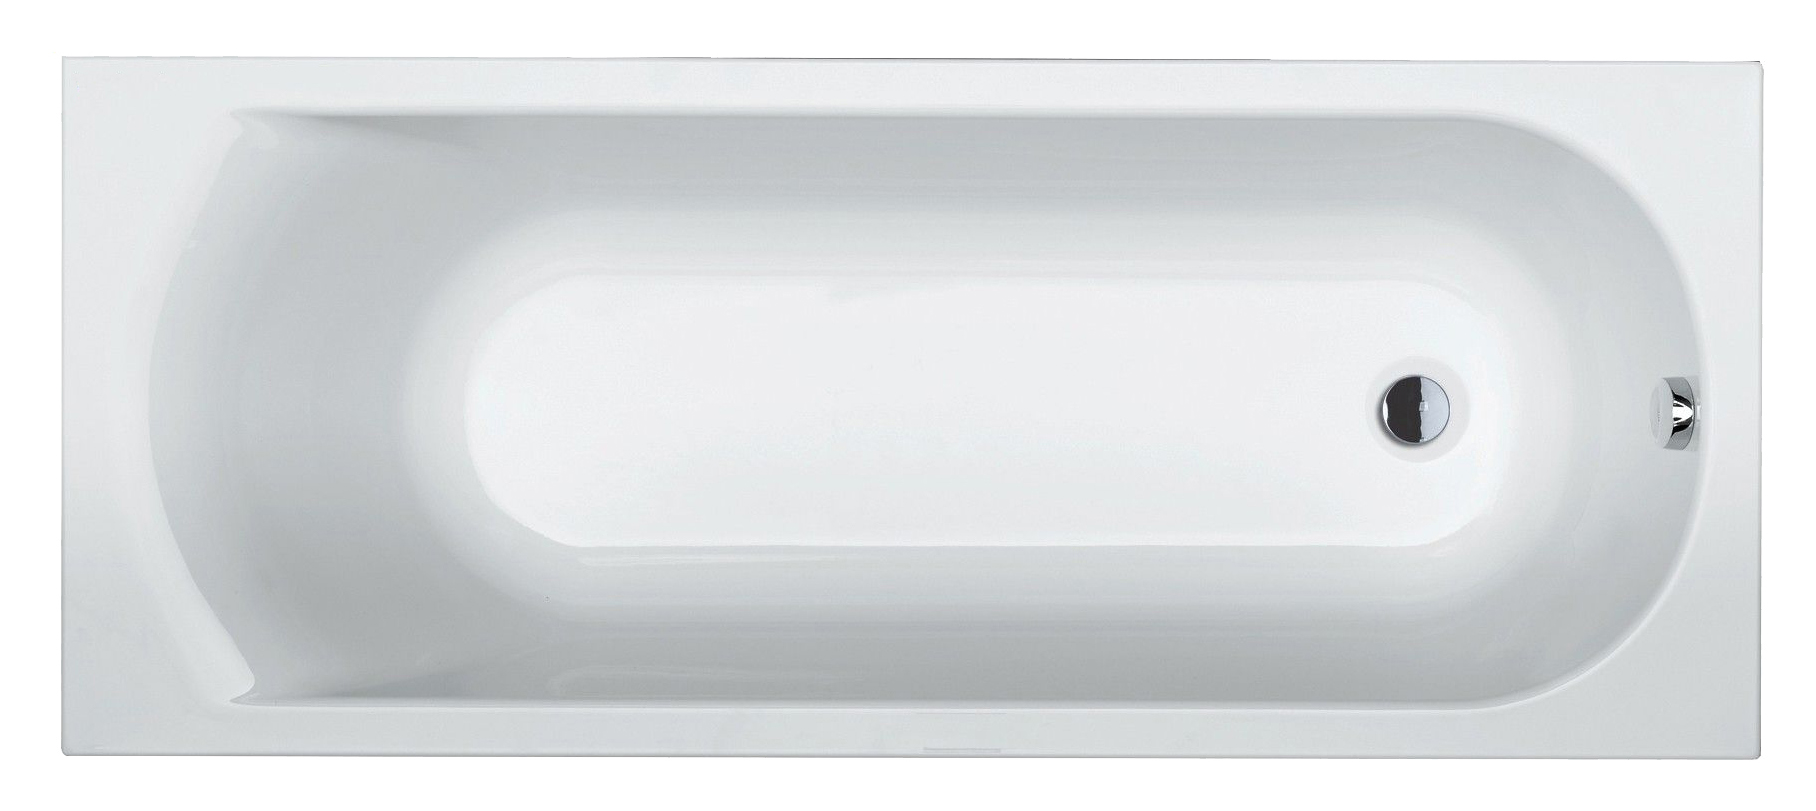 Акриловая ванна Riho Miami 180x80 ванна из литьевого мрамора и стиль форма 170х70